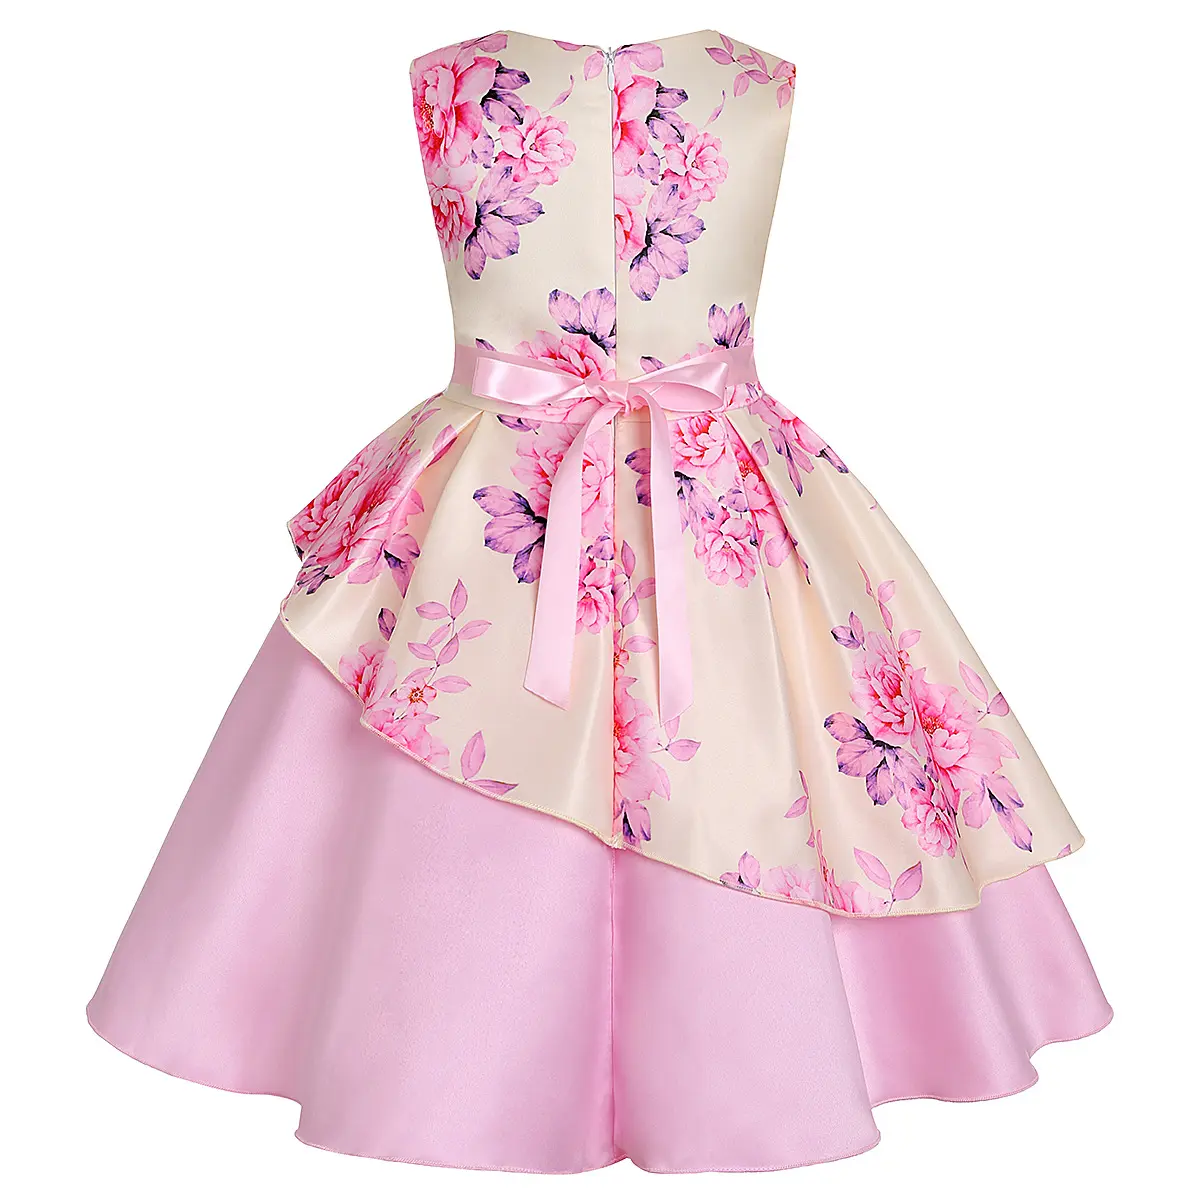 2021不規則な裾のプリントされた子供用ドレスを備えた高品質の新しい女の子の蝶結びドレス